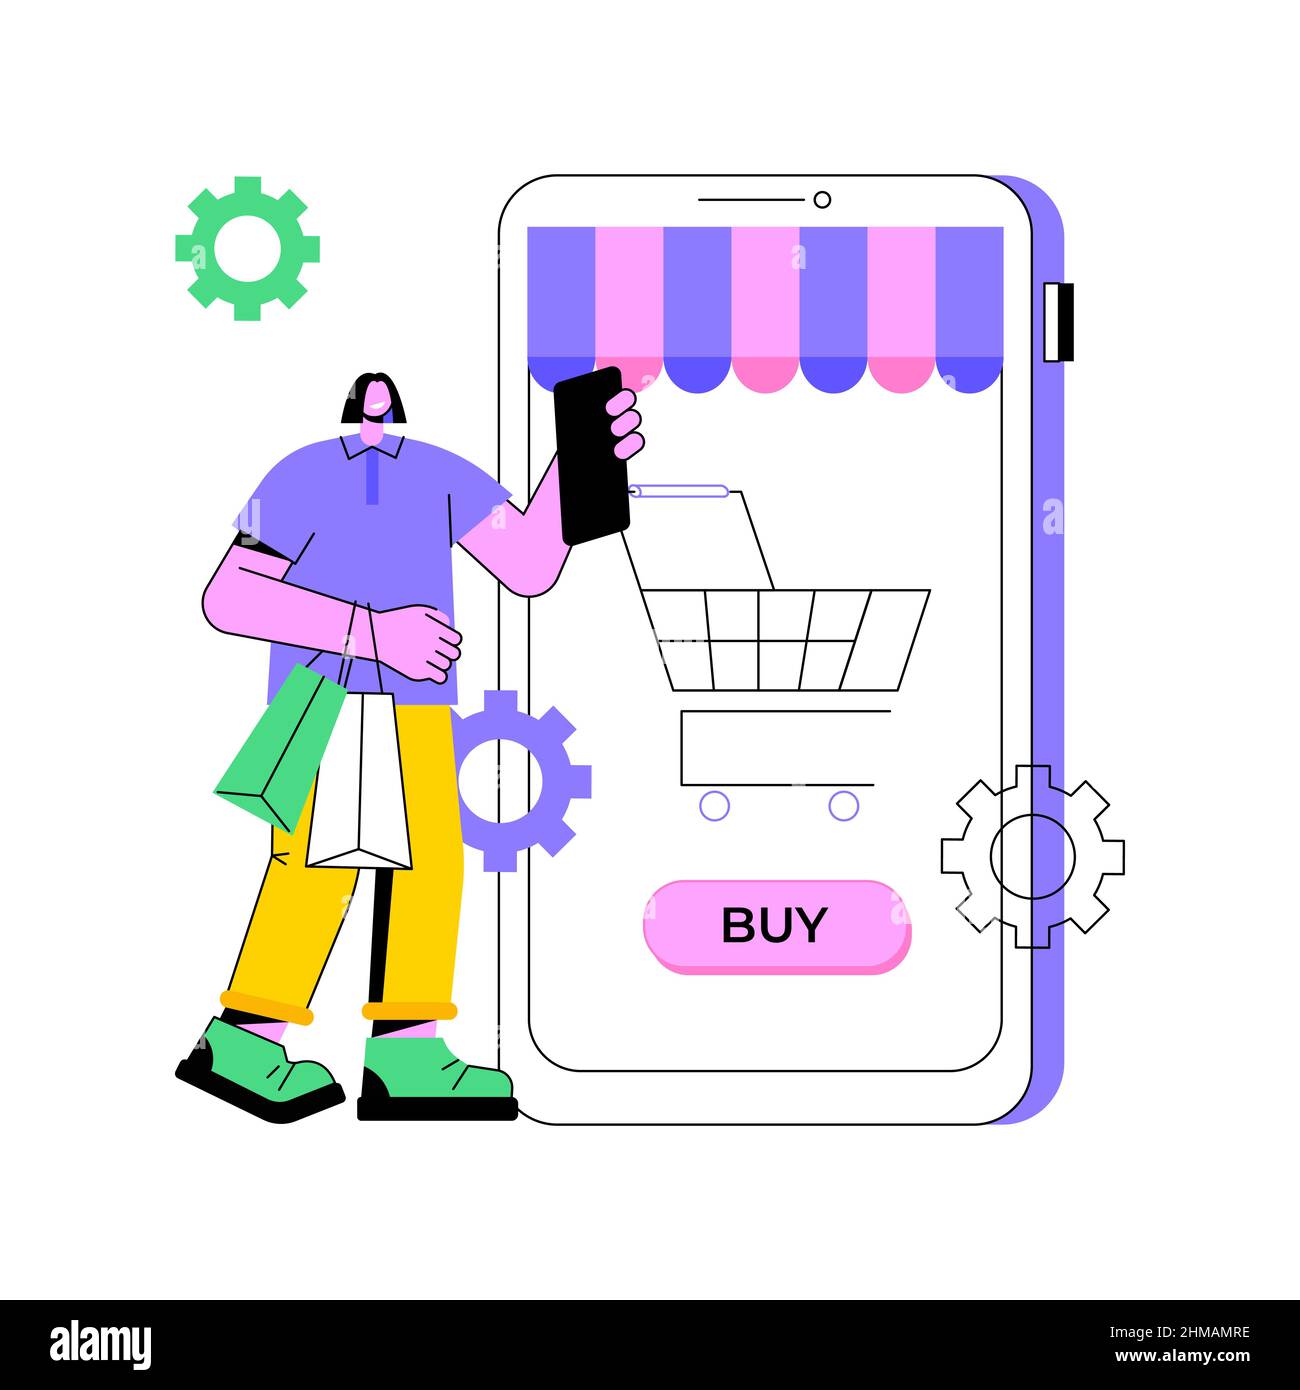 Illustrazione vettoriale del concetto astratto dell'applicazione eCommerce. Software commerciale, mercato delle applicazioni, app per piattaforma ecommerce, acquisto online, acquisti mobili, metafora astratta del pagamento in-app. Illustrazione Vettoriale